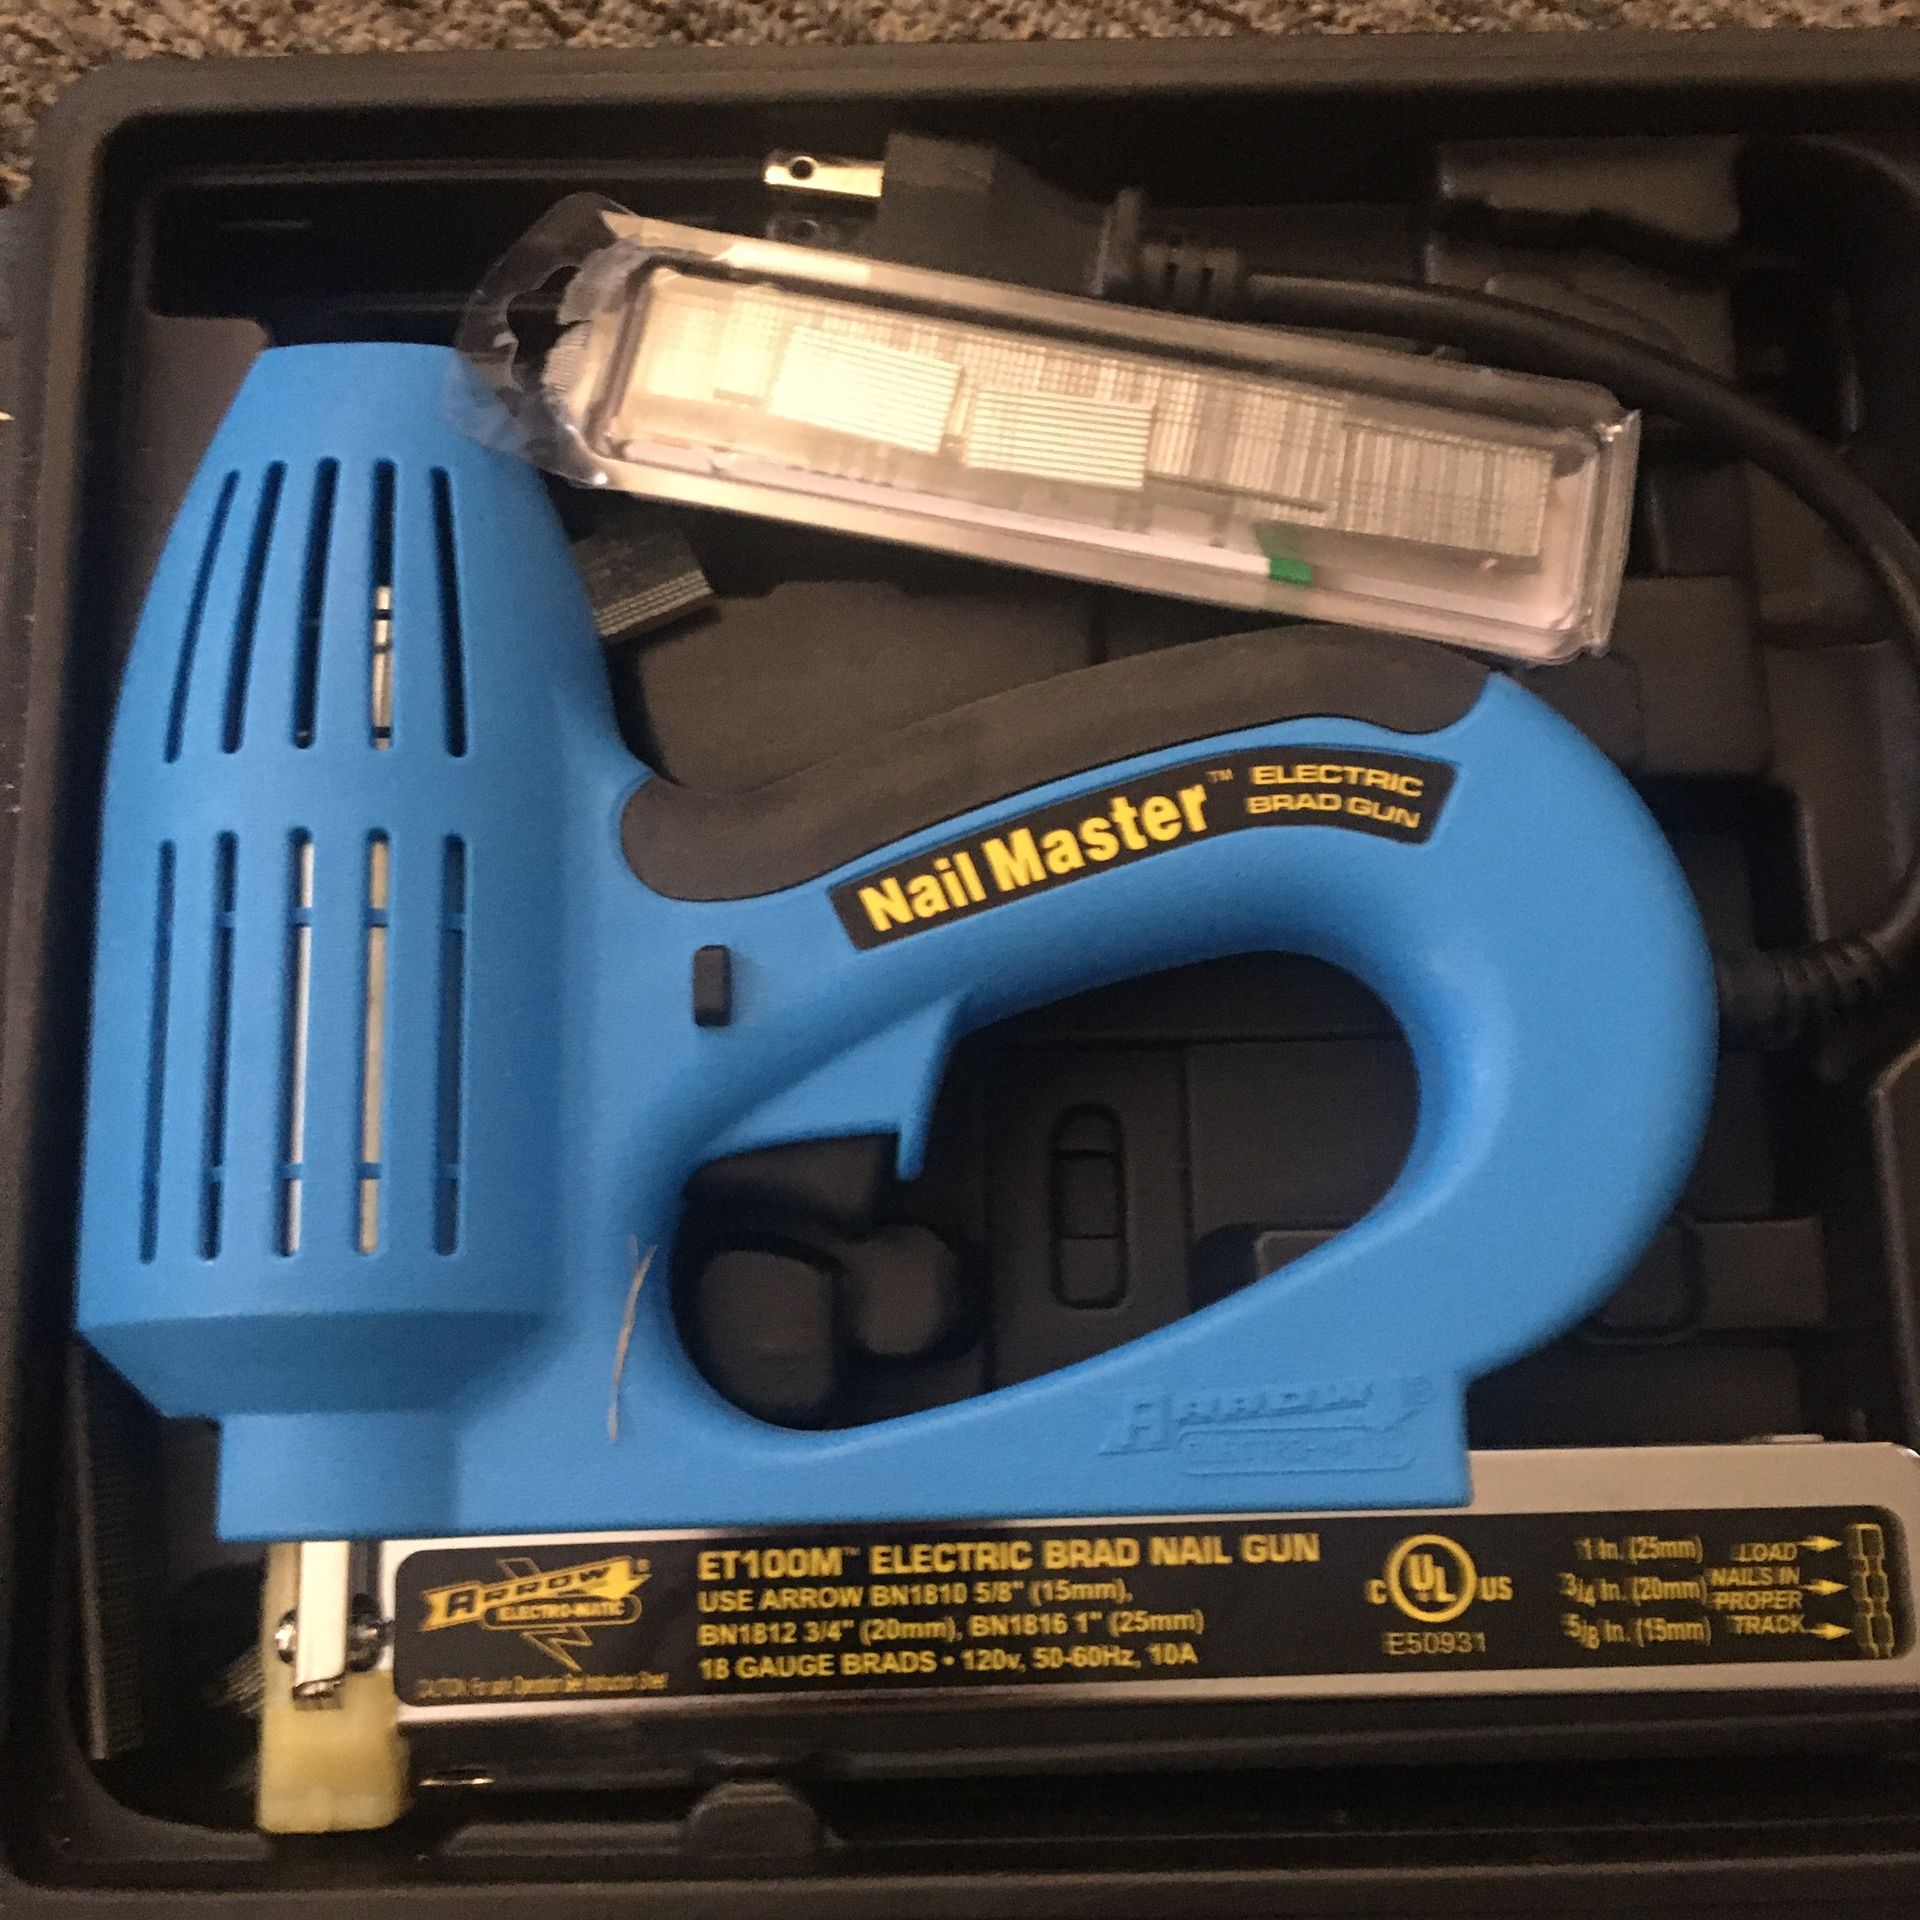 Brad Nail Gun Kit. Electric